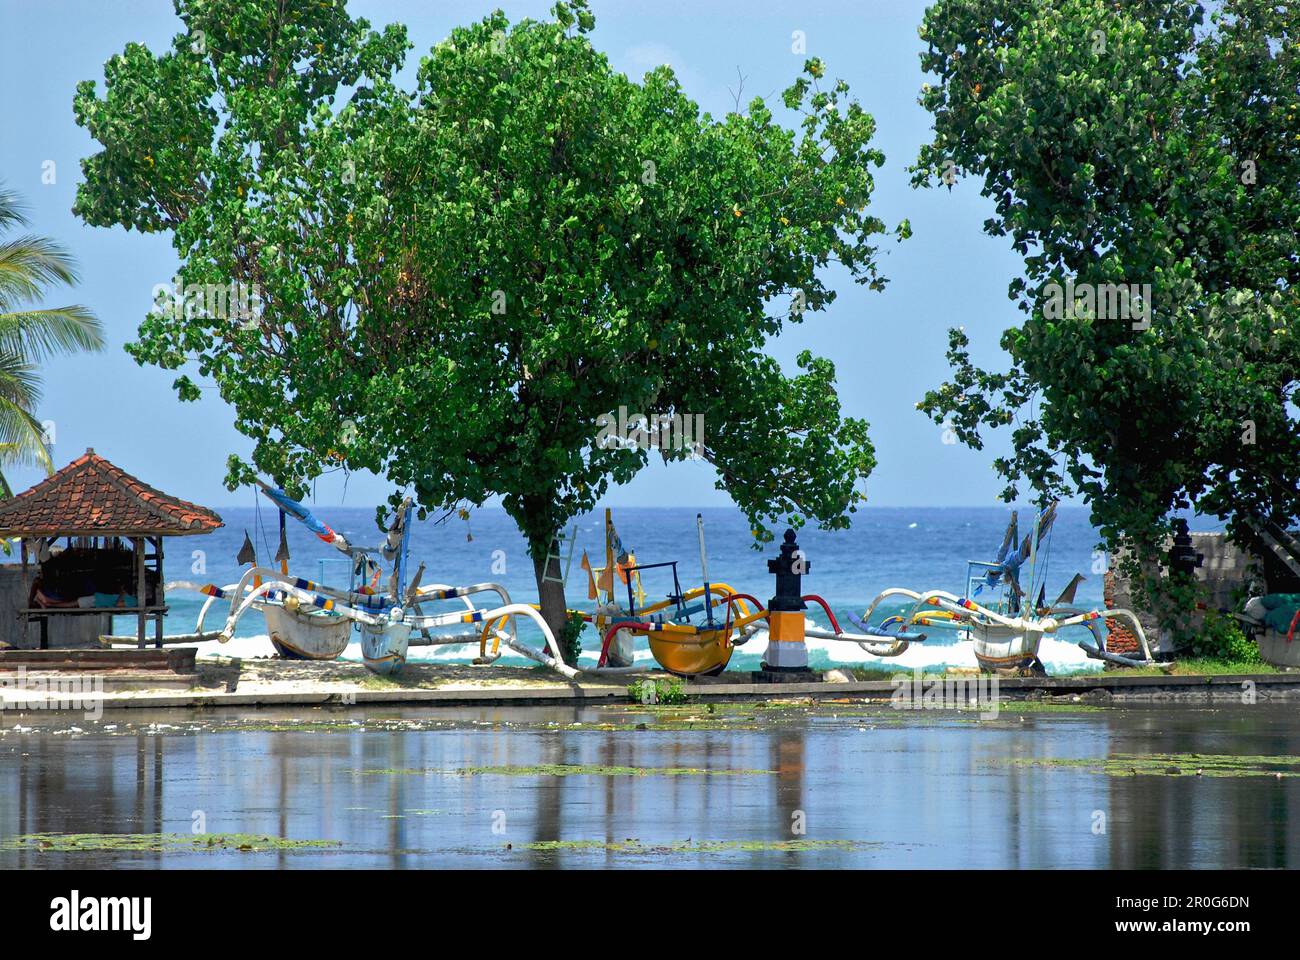 Stagno a Candi Dasa con barche sulla spiaggia, Candi Dasa, Bali, Indonesia, Asia Foto Stock